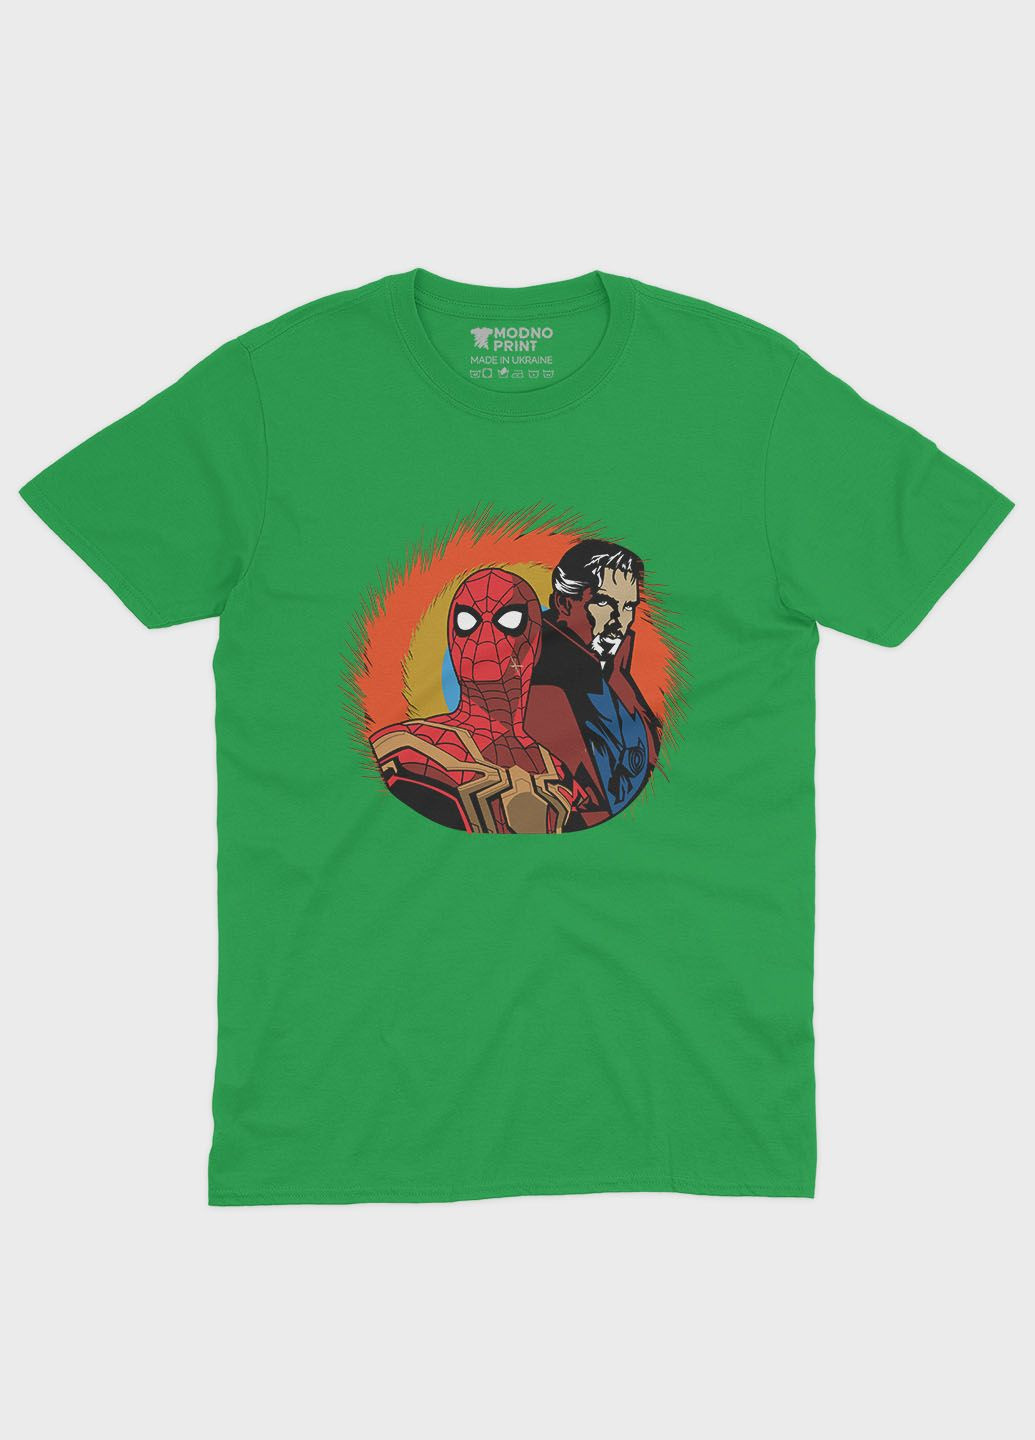 Зелена демісезонна футболка для дівчинки з принтом супергероя - людина-павук (ts001-1-keg-006-014-006-g) Modno